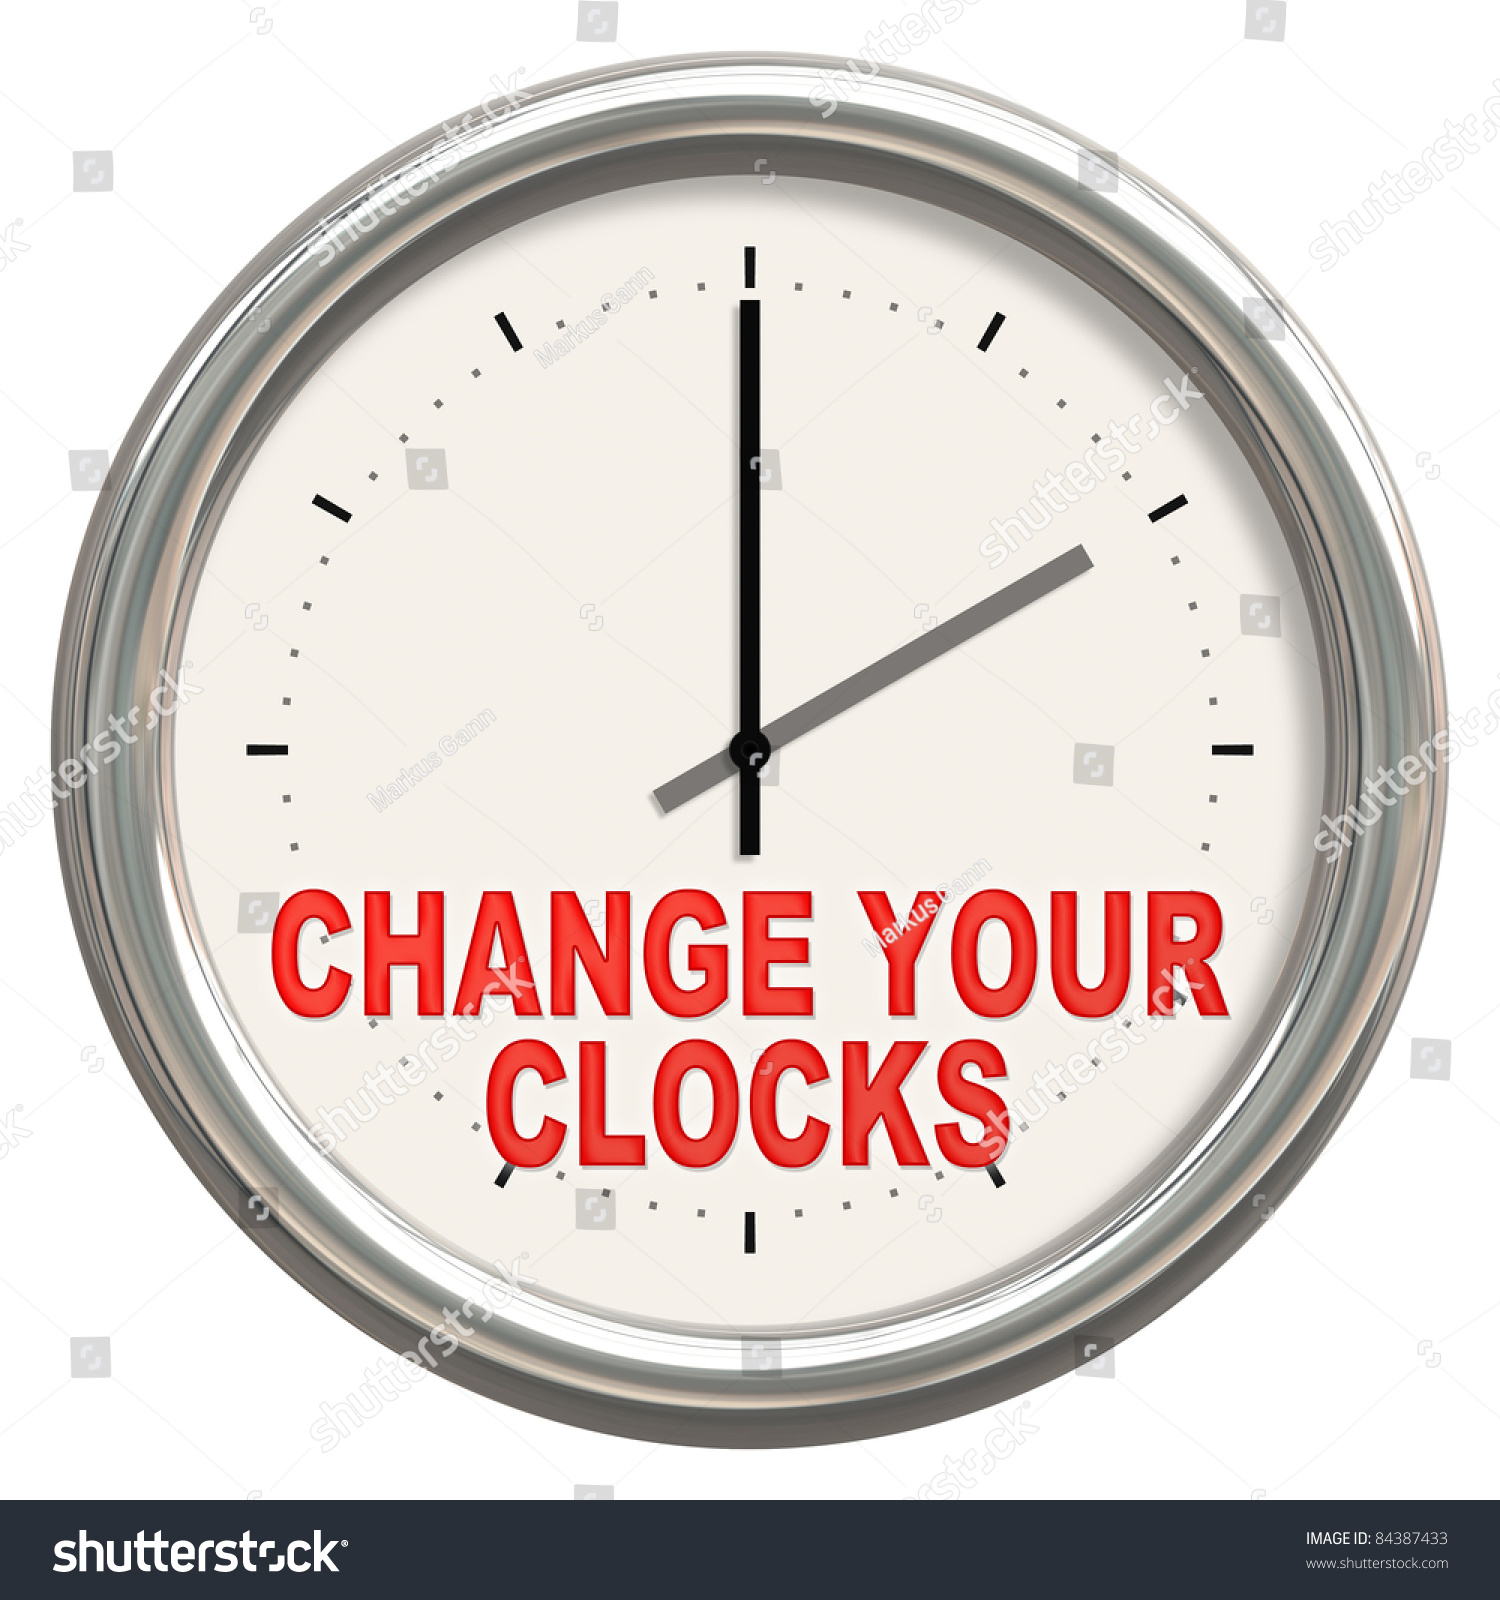 maagpijn voertuig heldin Image Nice Clock Change Your Clocks Stock Illustration 84387433